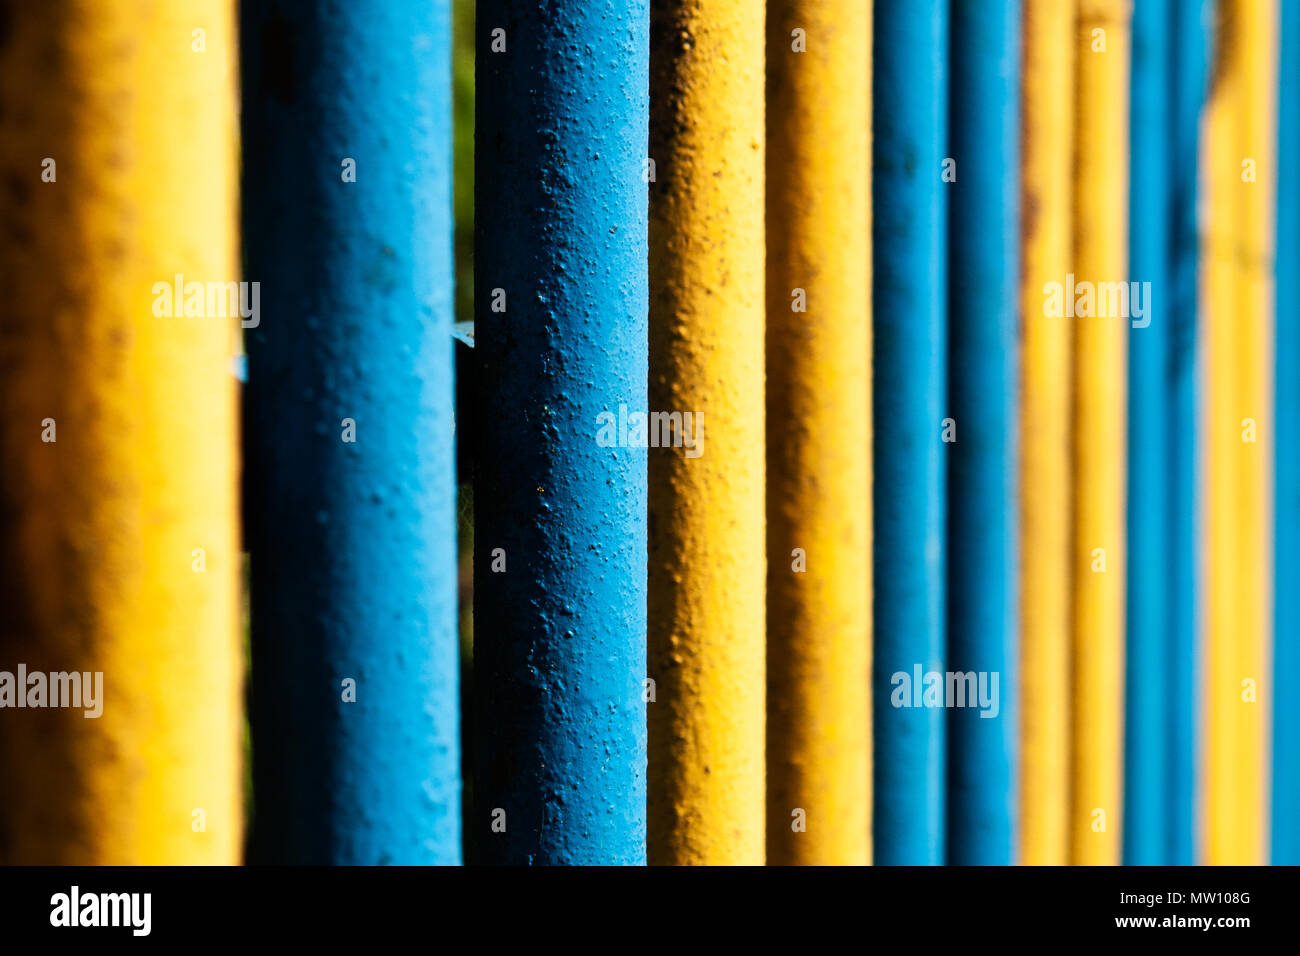 Tuyau jaune et bleu metal fence Banque D'Images